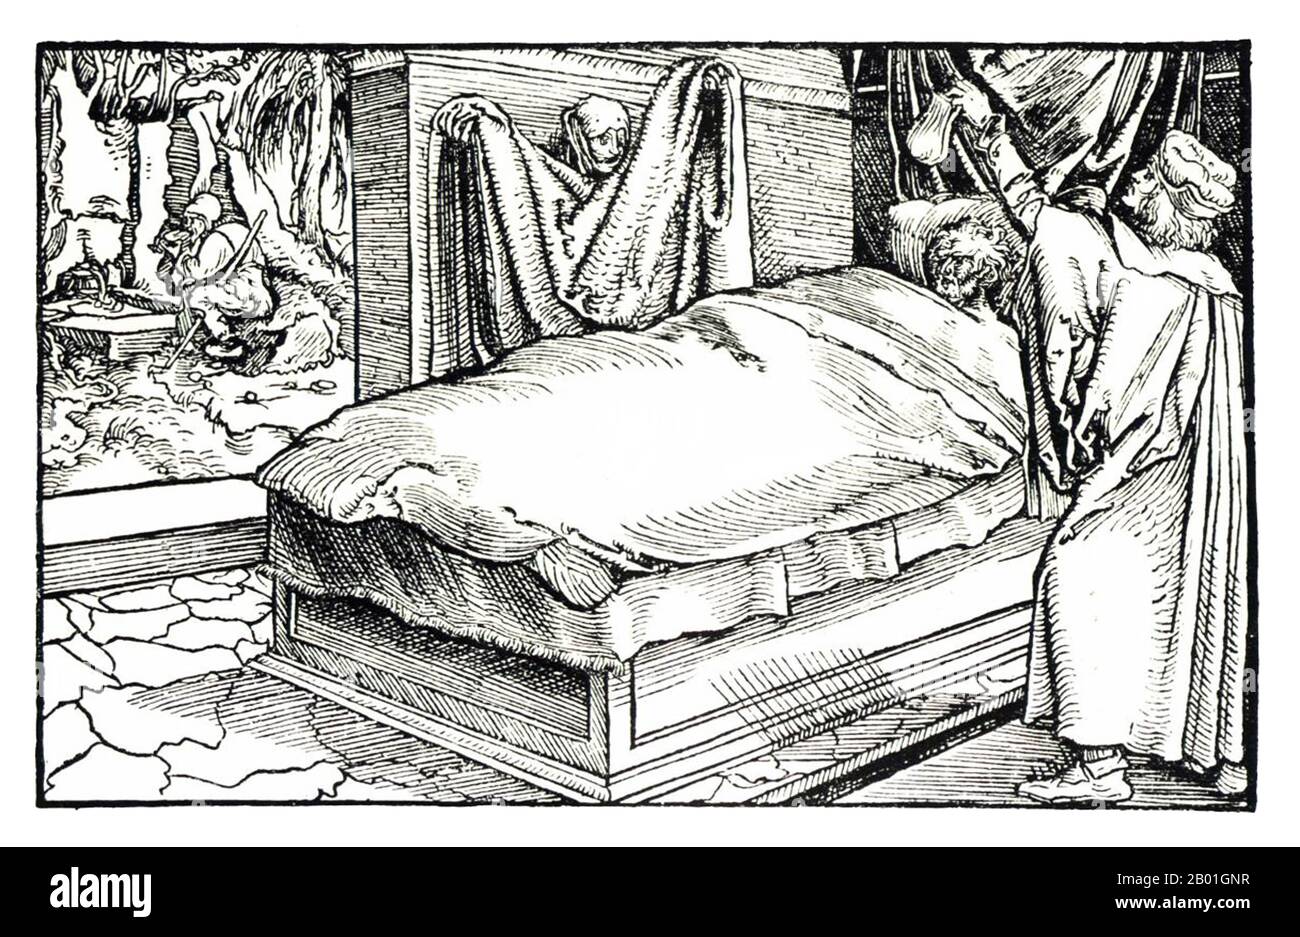 Europa: Un legno raffigurante la peste o la 'morte Nera', anonimo, 15th ° secolo. La morte Nera è stata una delle pandemie più devastanti della storia umana, che ha fatto il picco in Europa tra il 1348 e il 1350. Di diverse teorie concorrenti, la spiegazione dominante per la morte Nera è la teoria della peste, che attribuisce l'epidemia al batterio Yersinia pestis. Pensata di essere iniziata in Cina, viaggiò lungo la Via della Seta e raggiunse la Crimea entro il 1346. Foto Stock